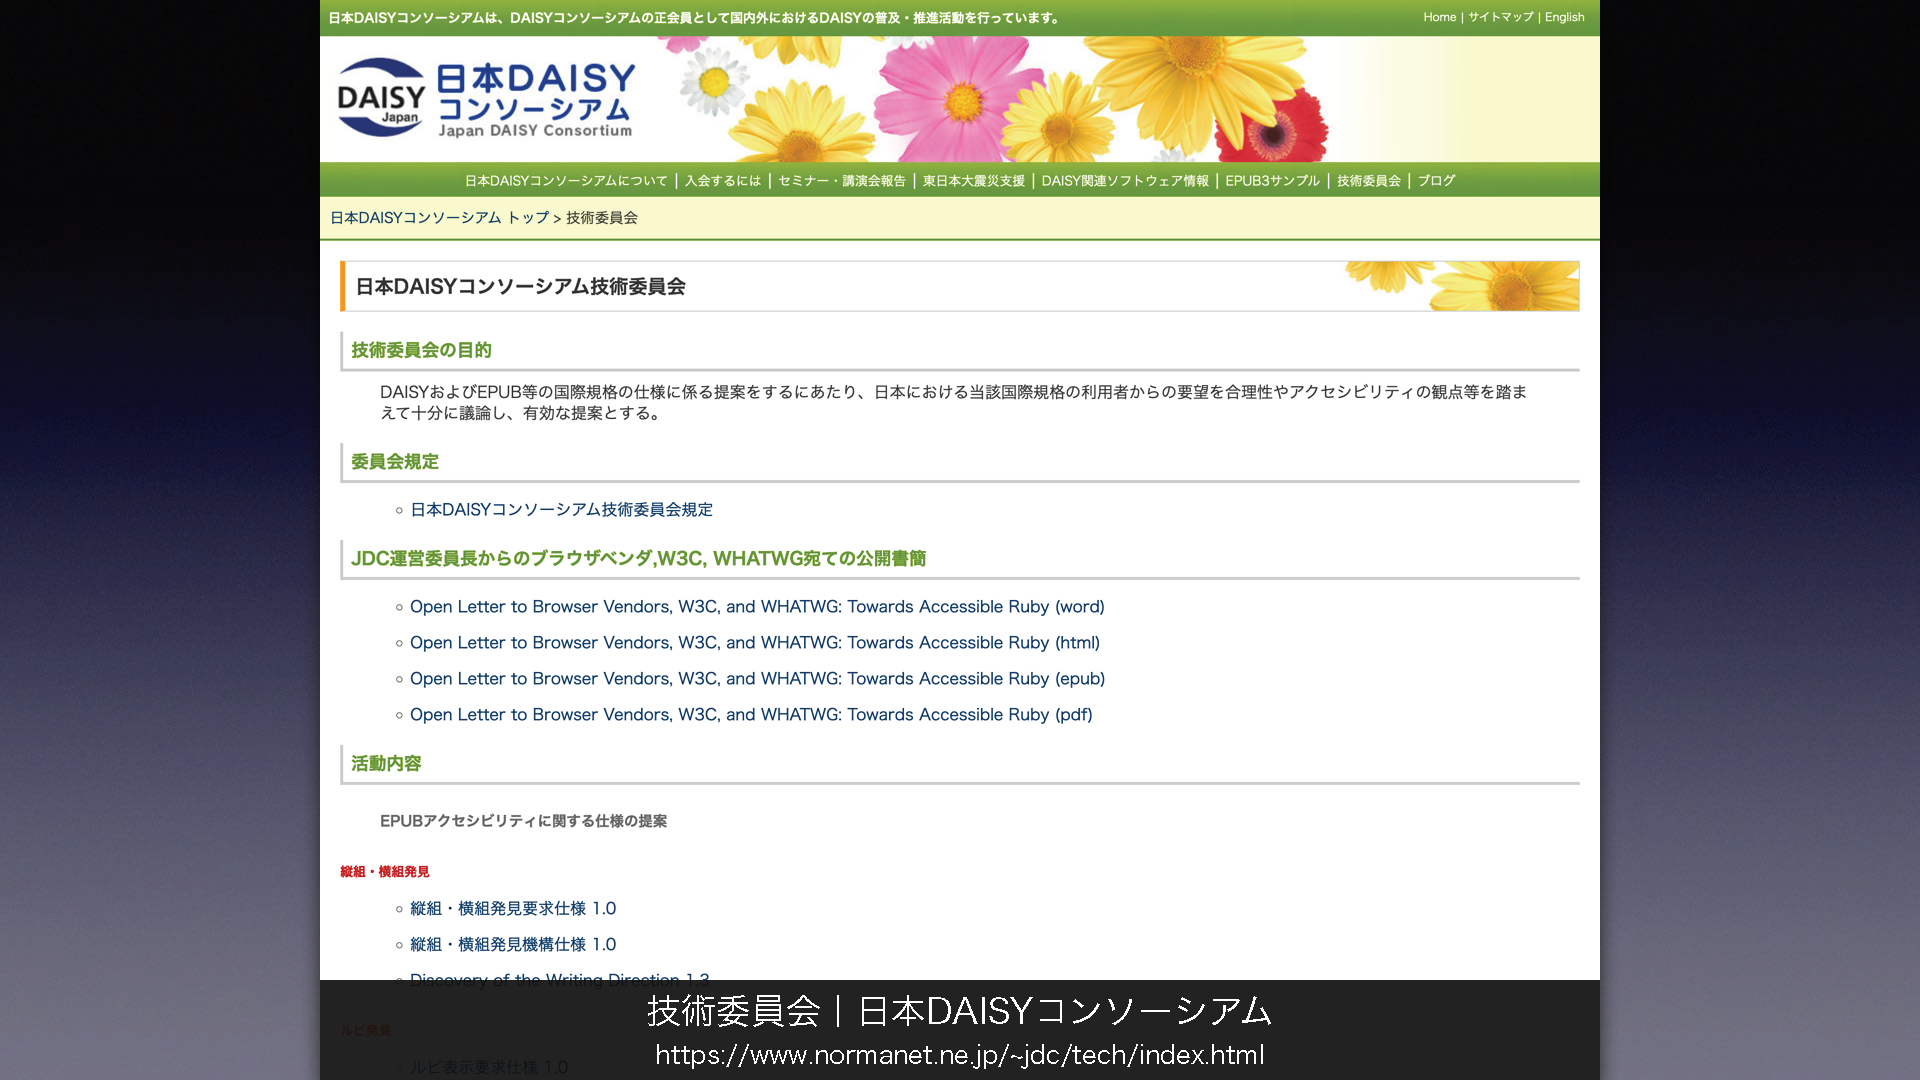 「技術委員会／日本DAISYコンソーシアム」について掲載されたウェブページの画像
	